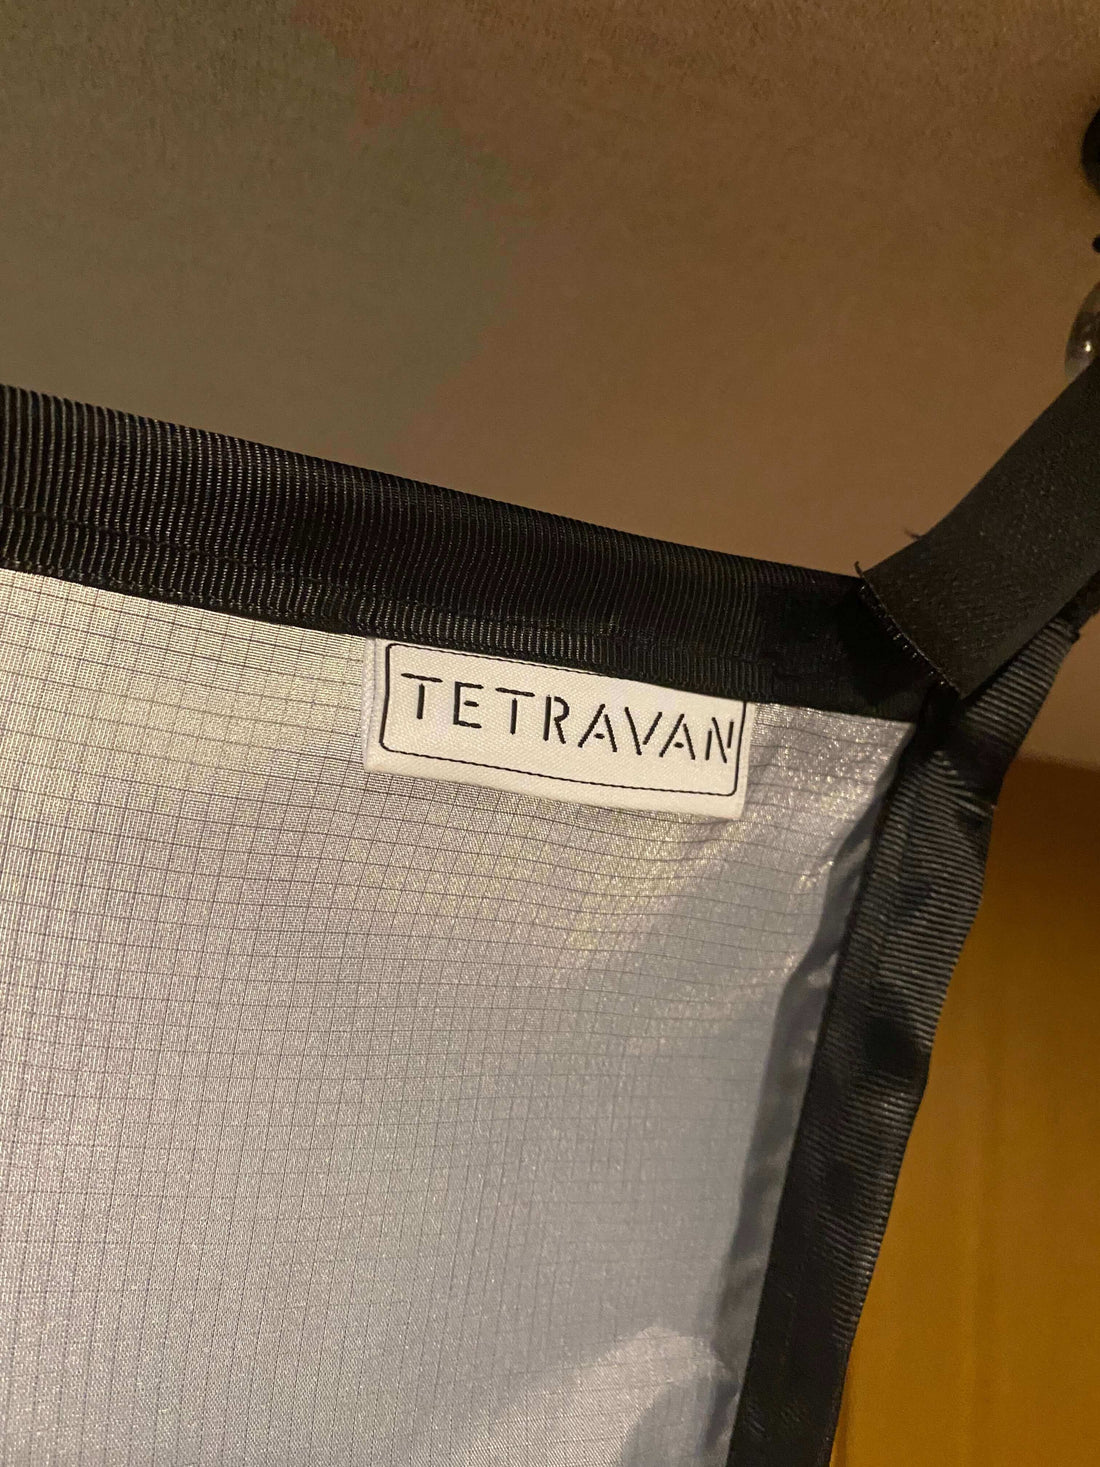 TetraVan Folding Shower 2.1 Folding Shower Curtain